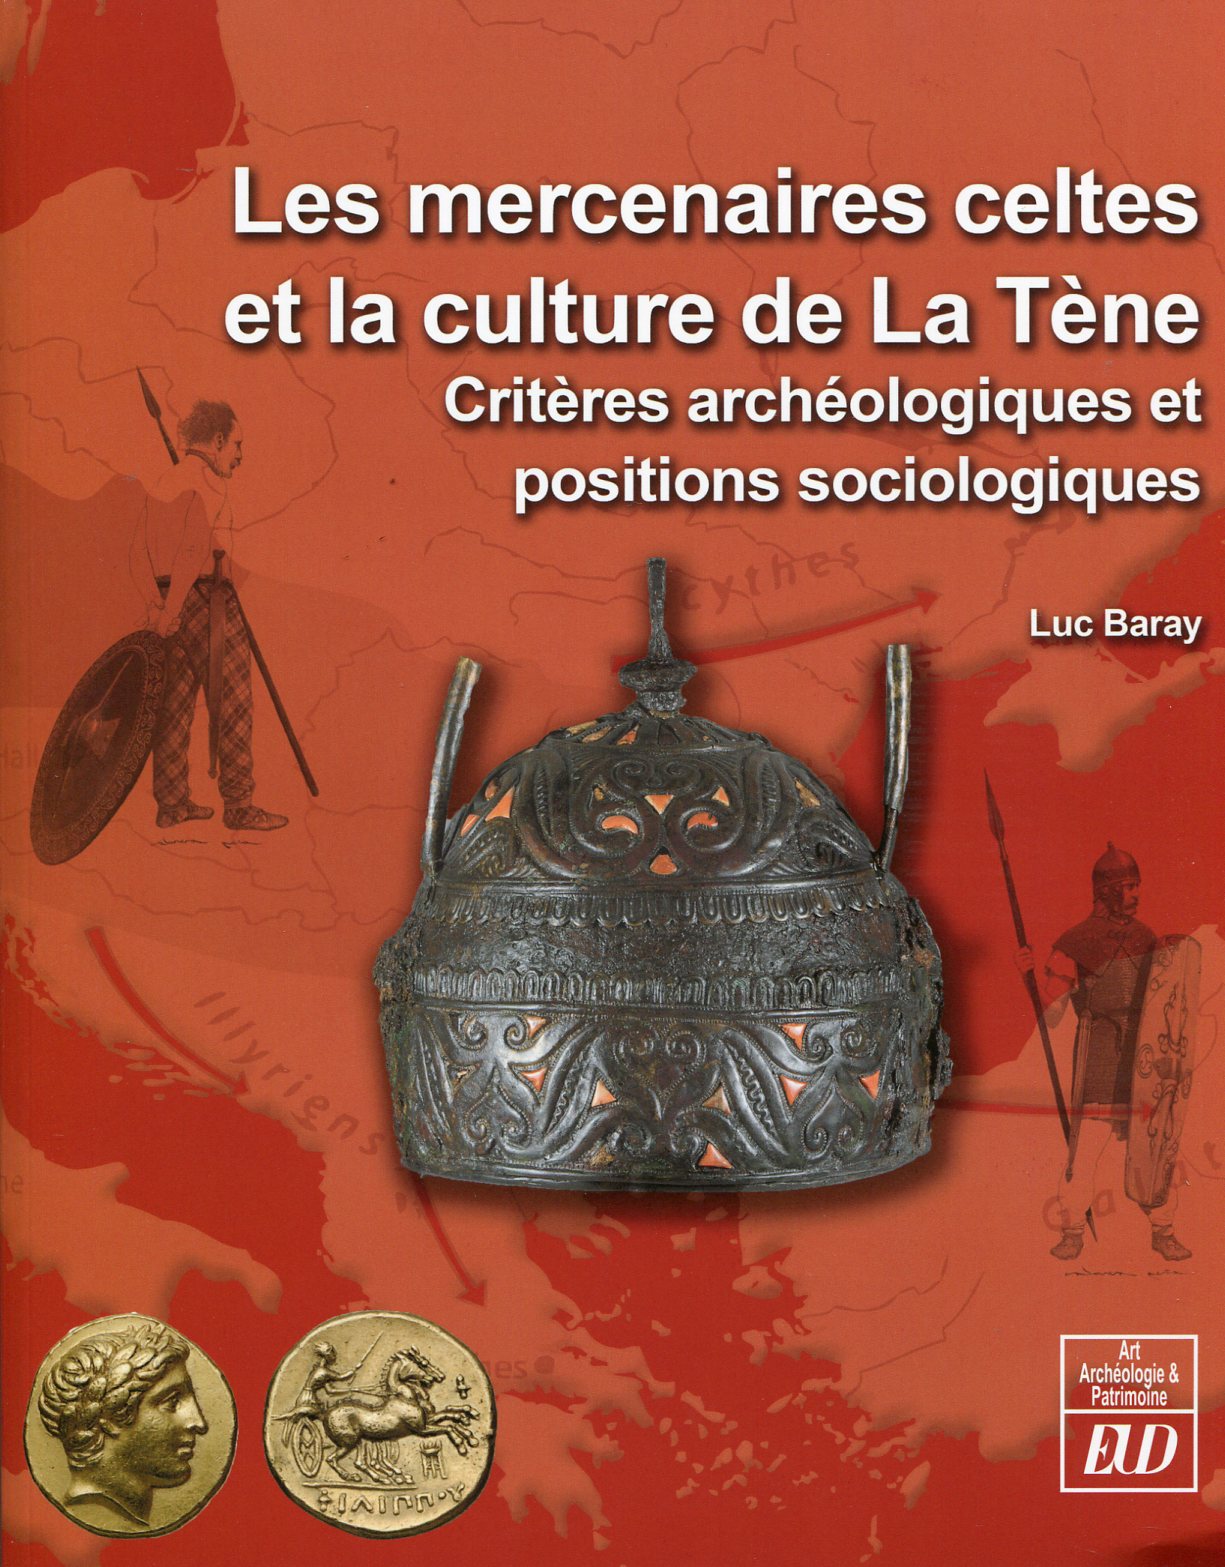 Les mercenaires celtes et la culture de La Tène. Critères archéologiques et positions sociologiques, 2014, 228 p.